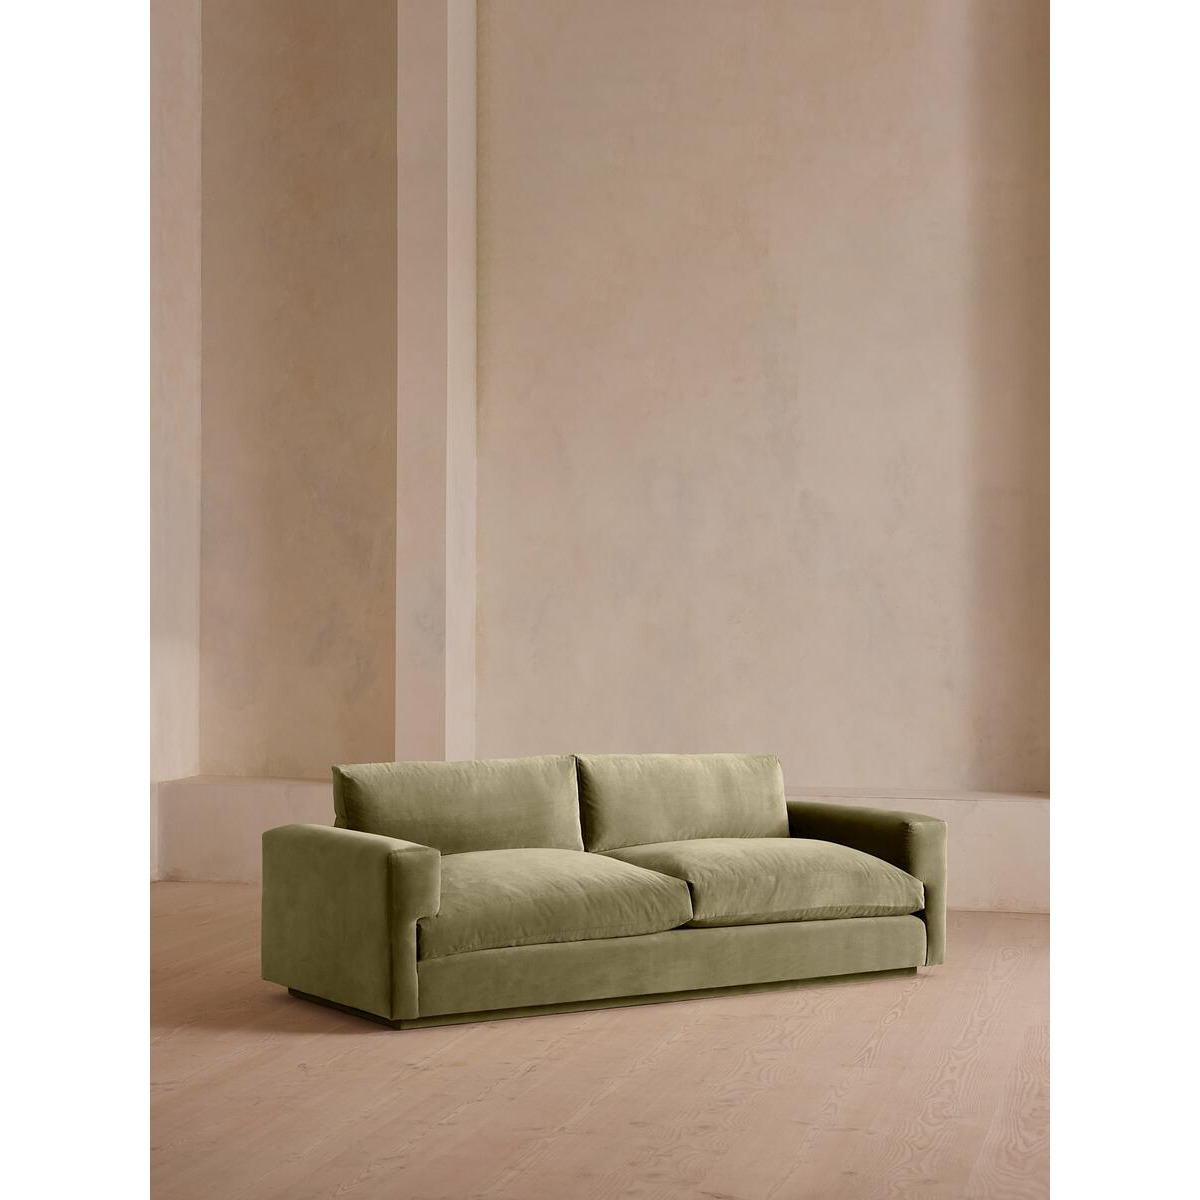 Lichen Velvet Mossley Sofa - Soho House Inspired Design